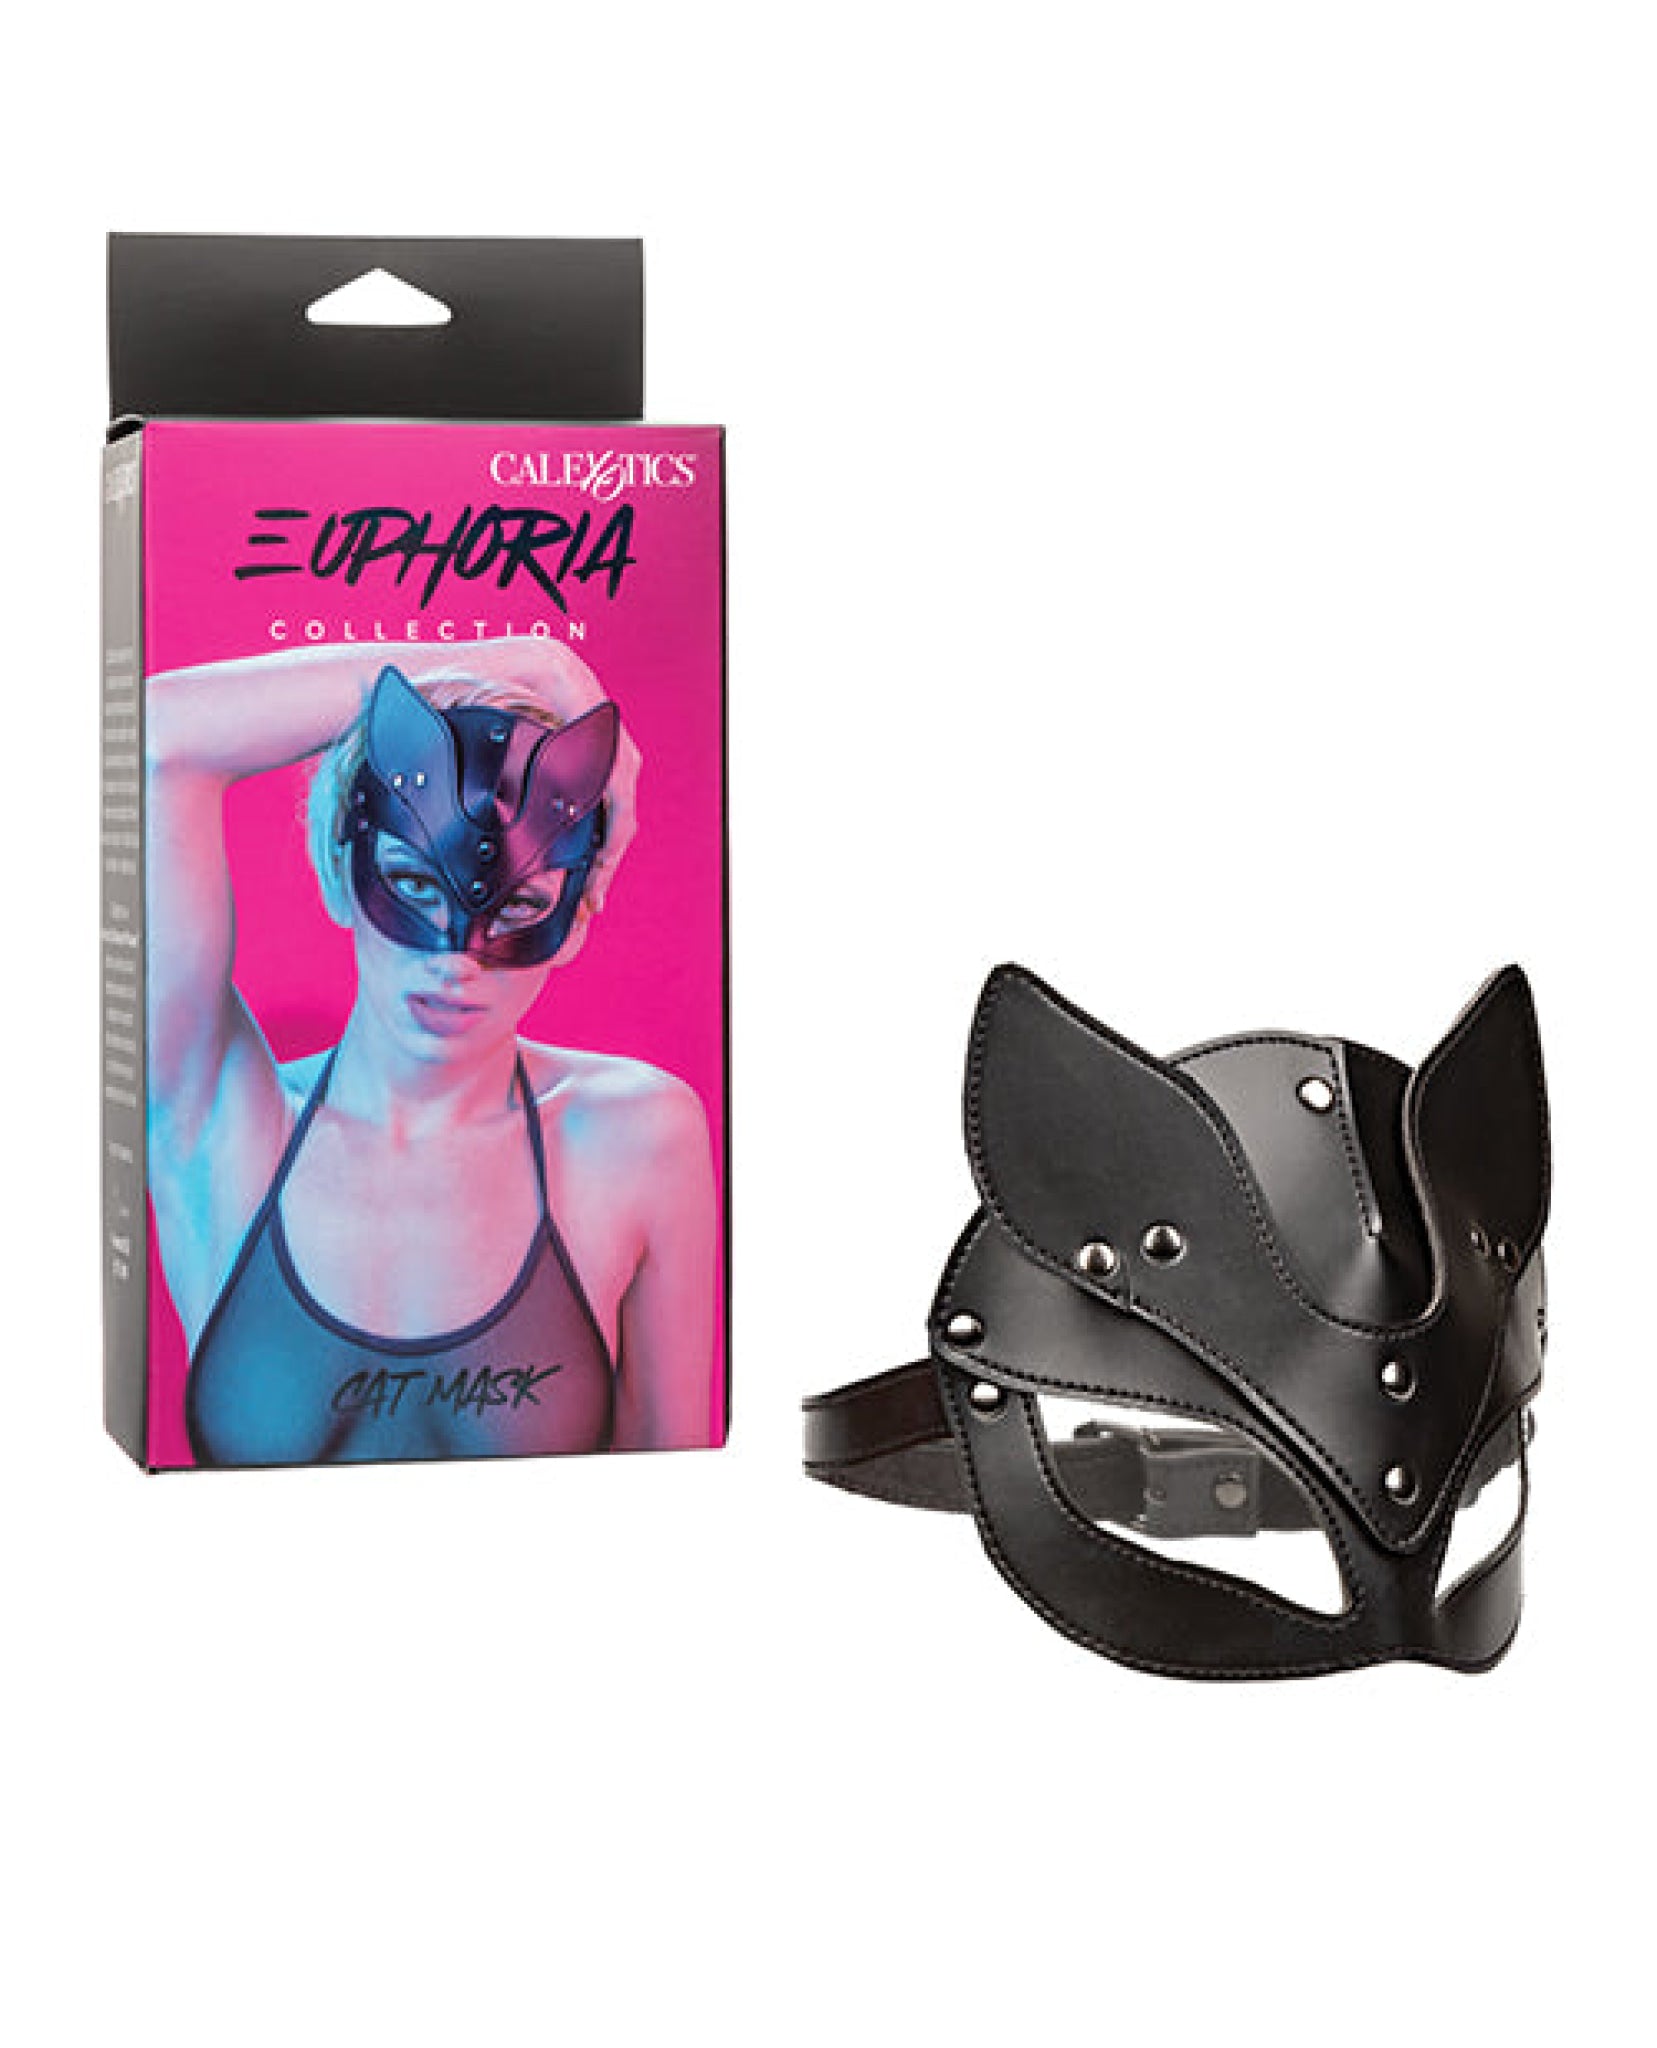 Euphoria Collection Cat Mask California Exotic Novelties